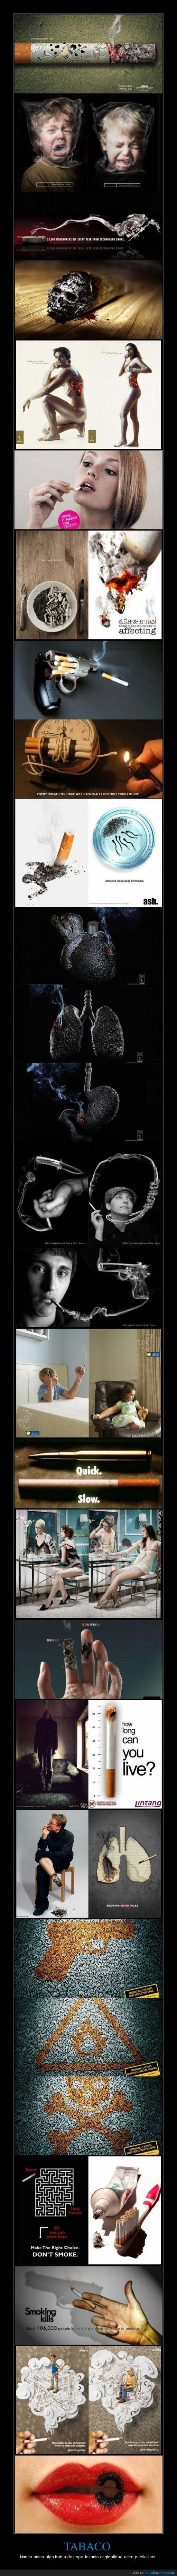 fumar,cigarrillos,cáncer,anuncios